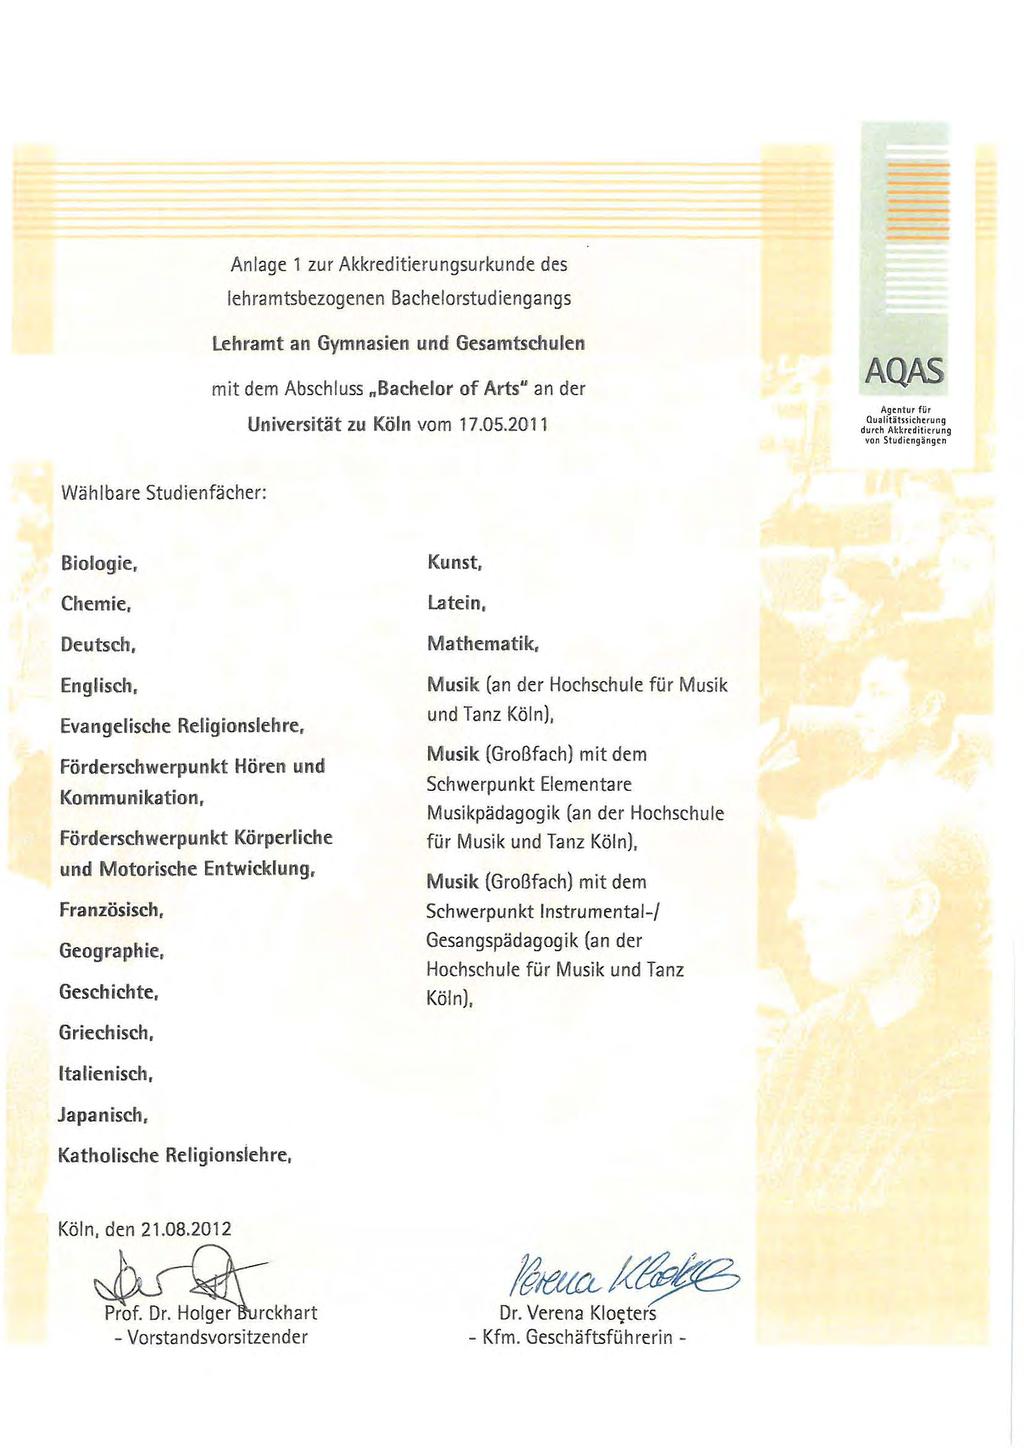 Anlage 1 zur Akkreditierungsurkunde des lehramtsbezogenen Bachelorstudiengangs lehramt an Gymnasien und Gesamtschulen mit dem Abschluss "Bachelor of Arts U an der Universität zu Köln vom 17.05.